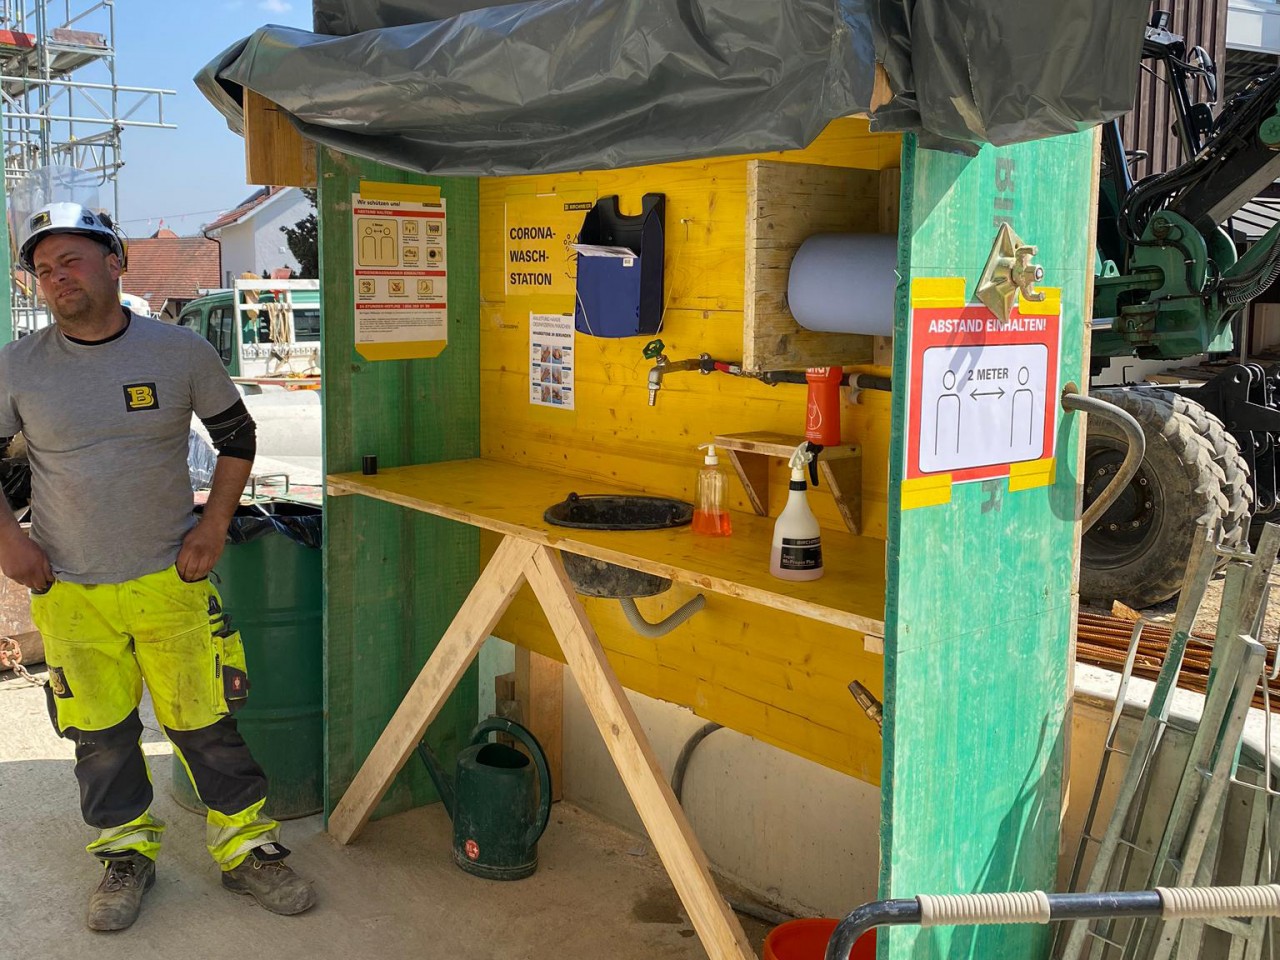 Innovativ: eine Waschstation aus Schaltafeln, mit einem Maurerkessel als Lavabo und einem Einwegtuchspender